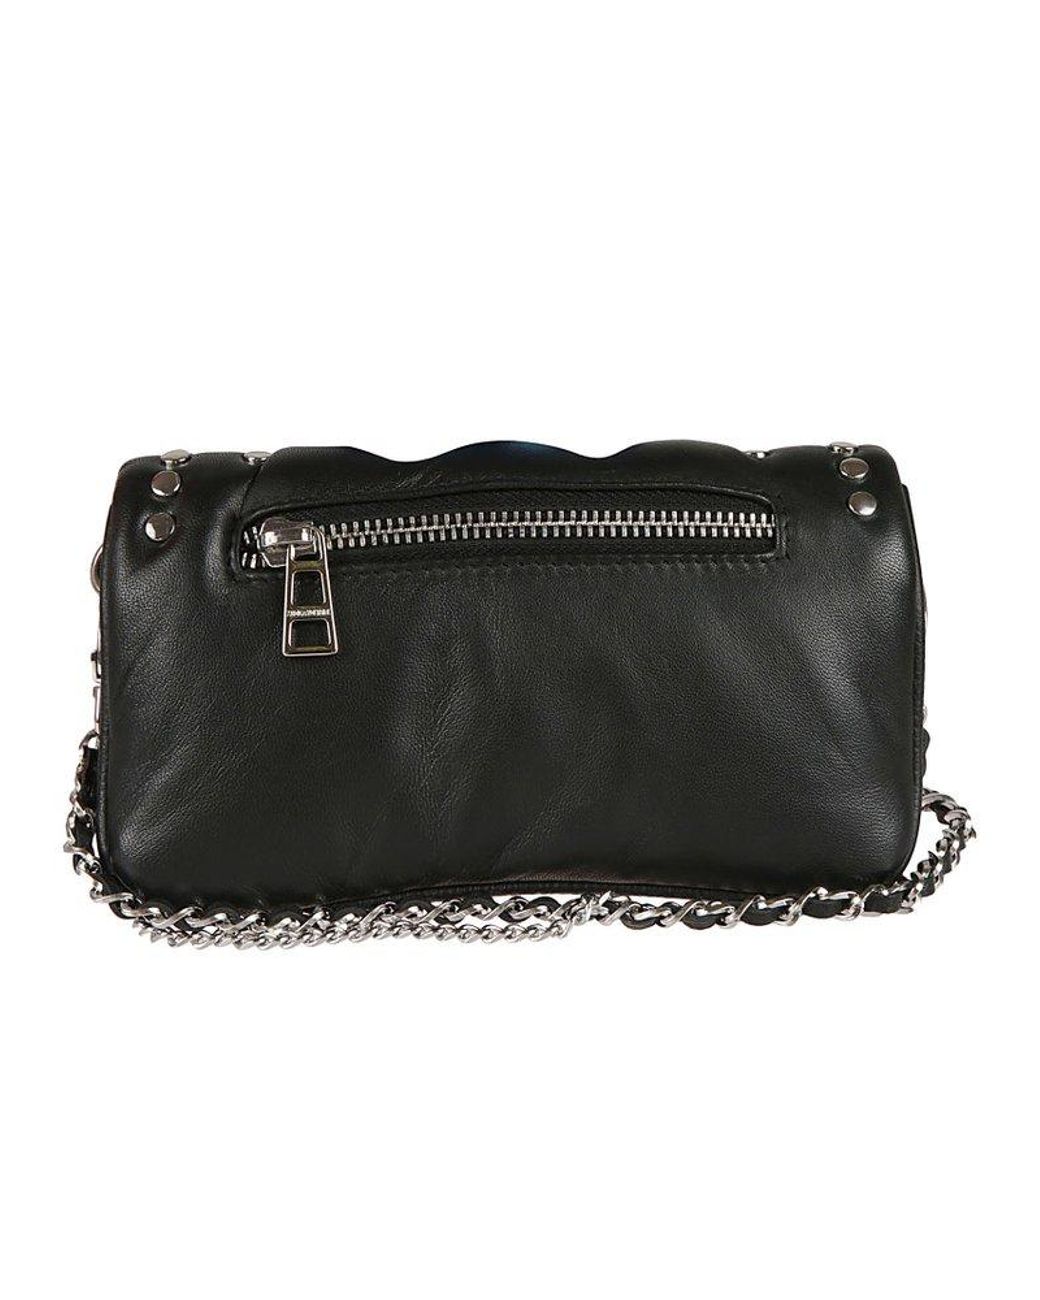 Zadig & Voltaire Leather Stud-detailed Shoulder Bag in Black | Lyst